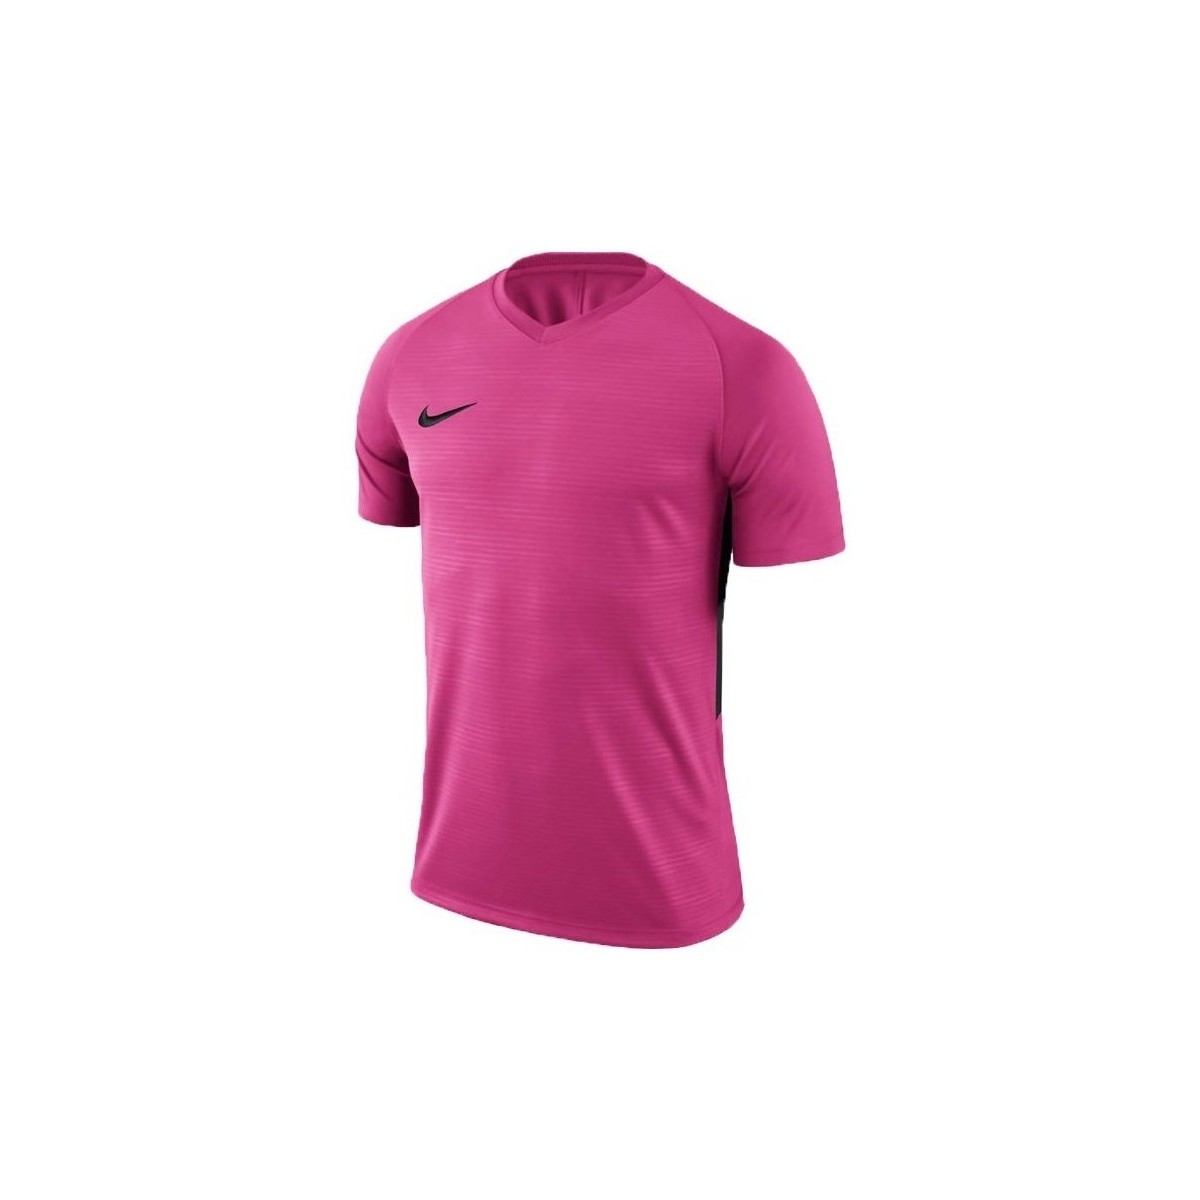 textil Dreng T-shirts m. korte ærmer Nike JR Tiempo Prem Pink